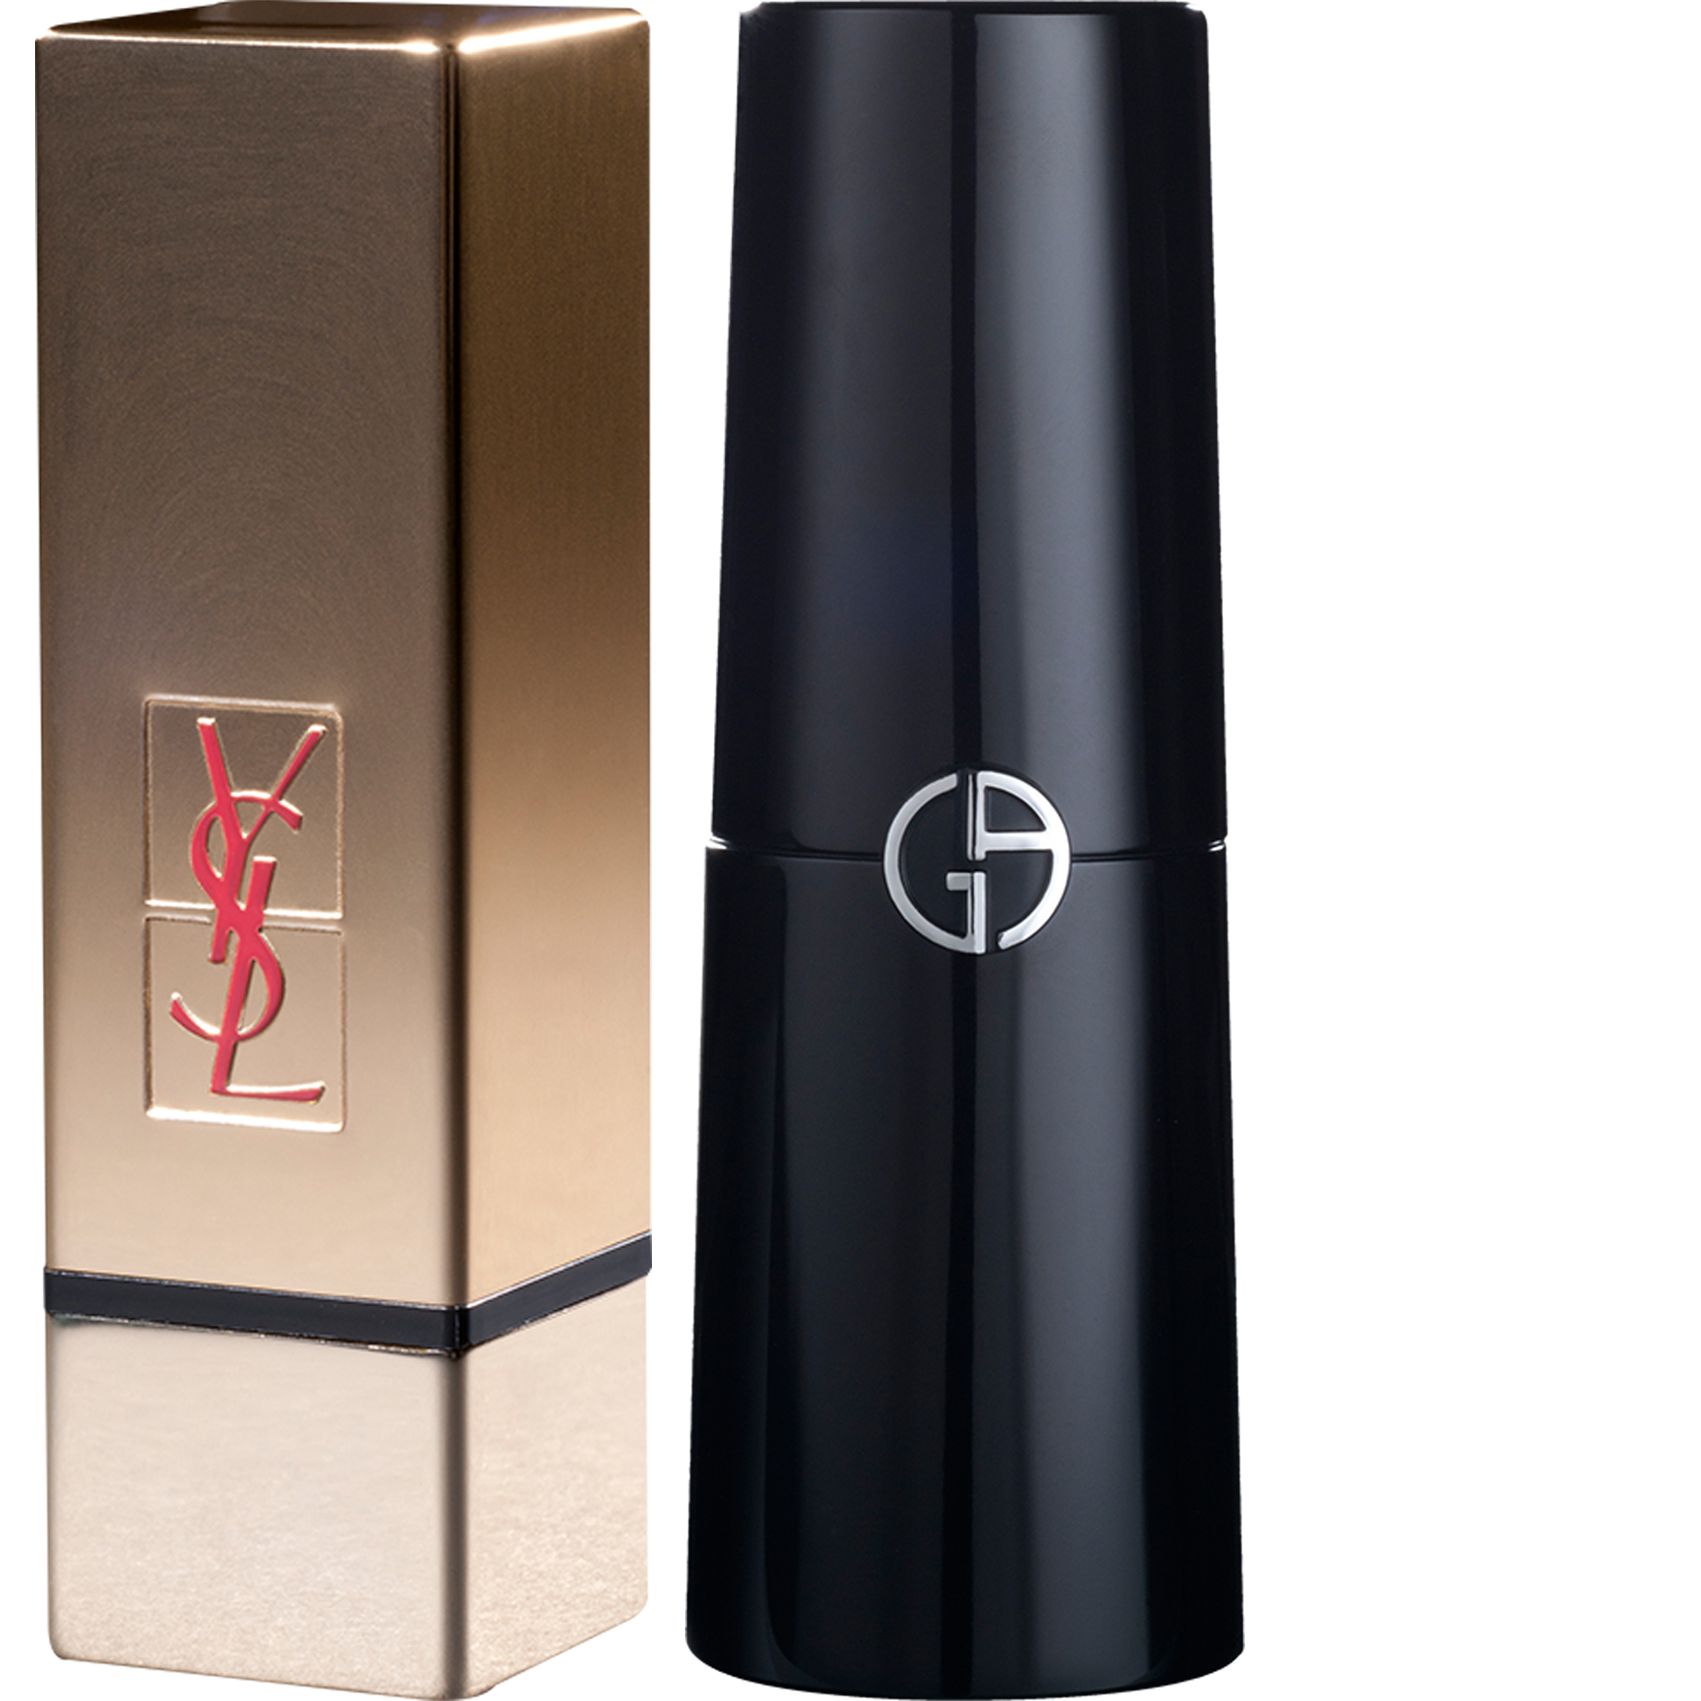 Yves Saint Laurent Pure Couture ist ein goldener Lippenstift, der auf dem YSL-Design basiert und von Axilone entwickelt wurde. Das perfekt abgewinkelte kubische Design besteht aus Aluminium und der Deckel ist mit tiefen Gravuren versehen. Die Dekoration ist aus eloxiertem Gold. Das Logo ist teilweise eingraviert und mit rotem Siebdruck überzogen. Für die neue Version von Armanis magnetischem und skulpturalem Lippenstift